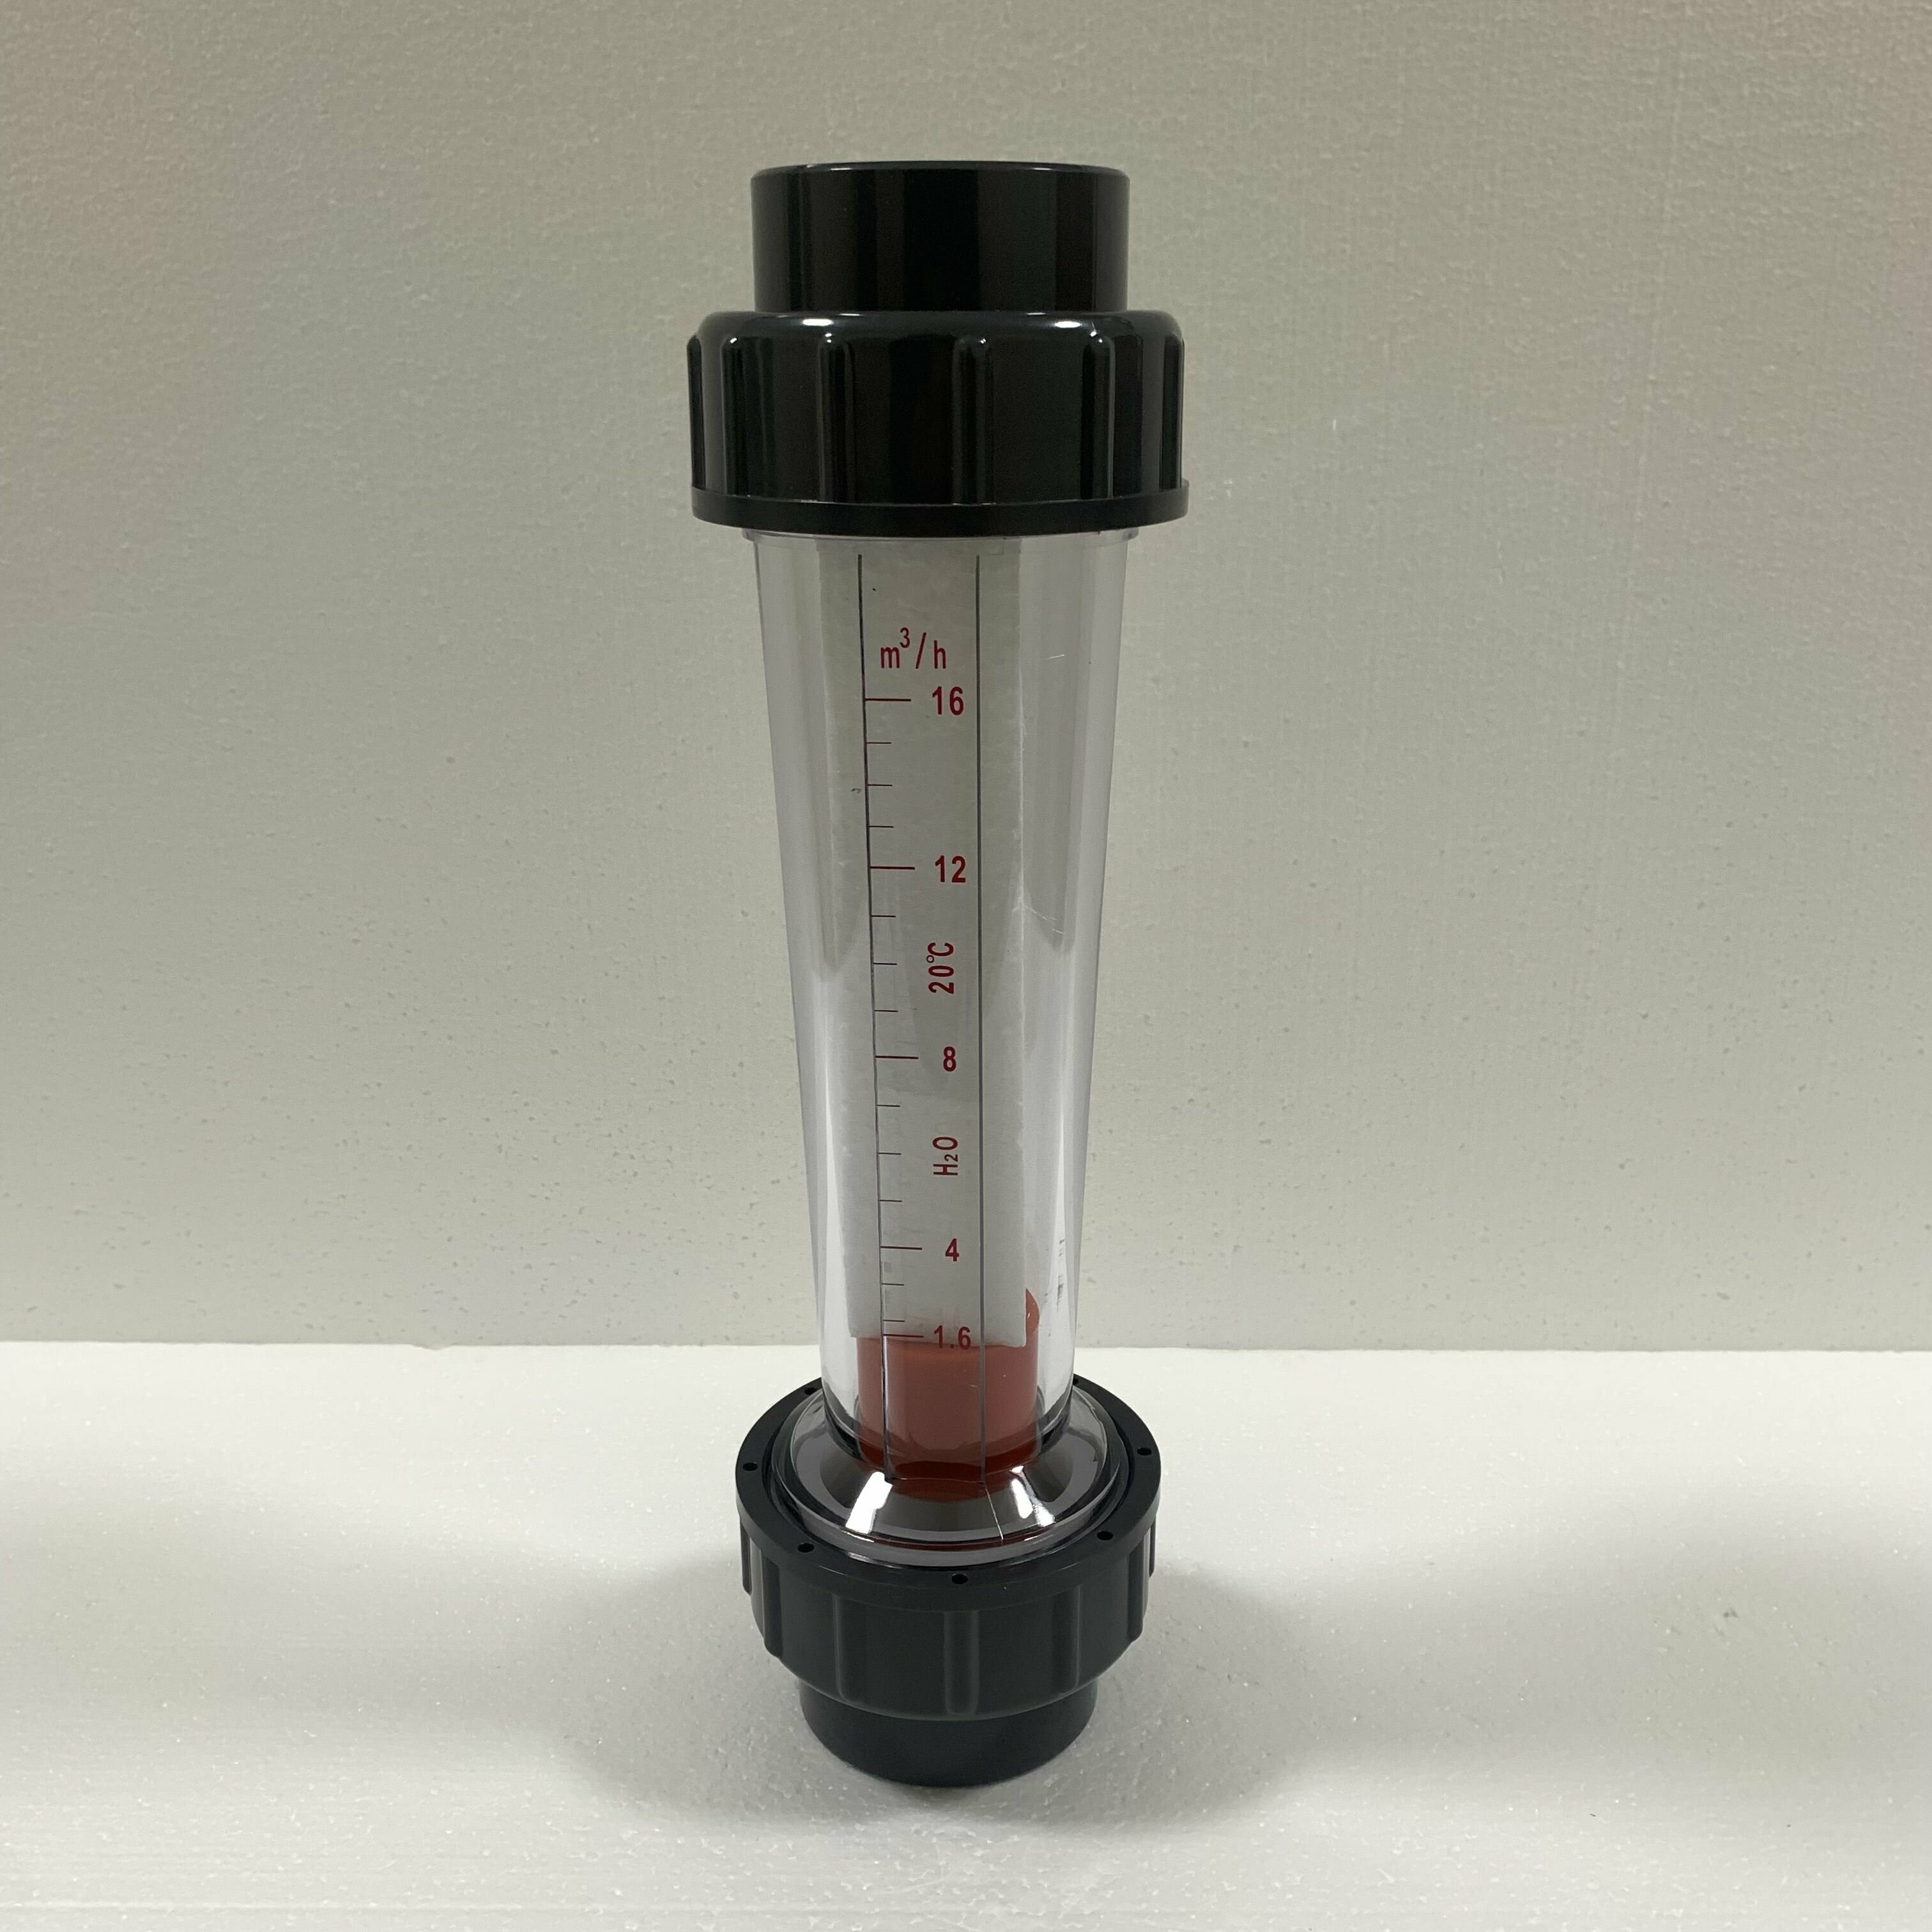 Ротаметр (расходомер) воды LZS-50D, диапазон измерения 1,6-16 м3/час, акриловый корпус, фитинги ПВХ, под клей